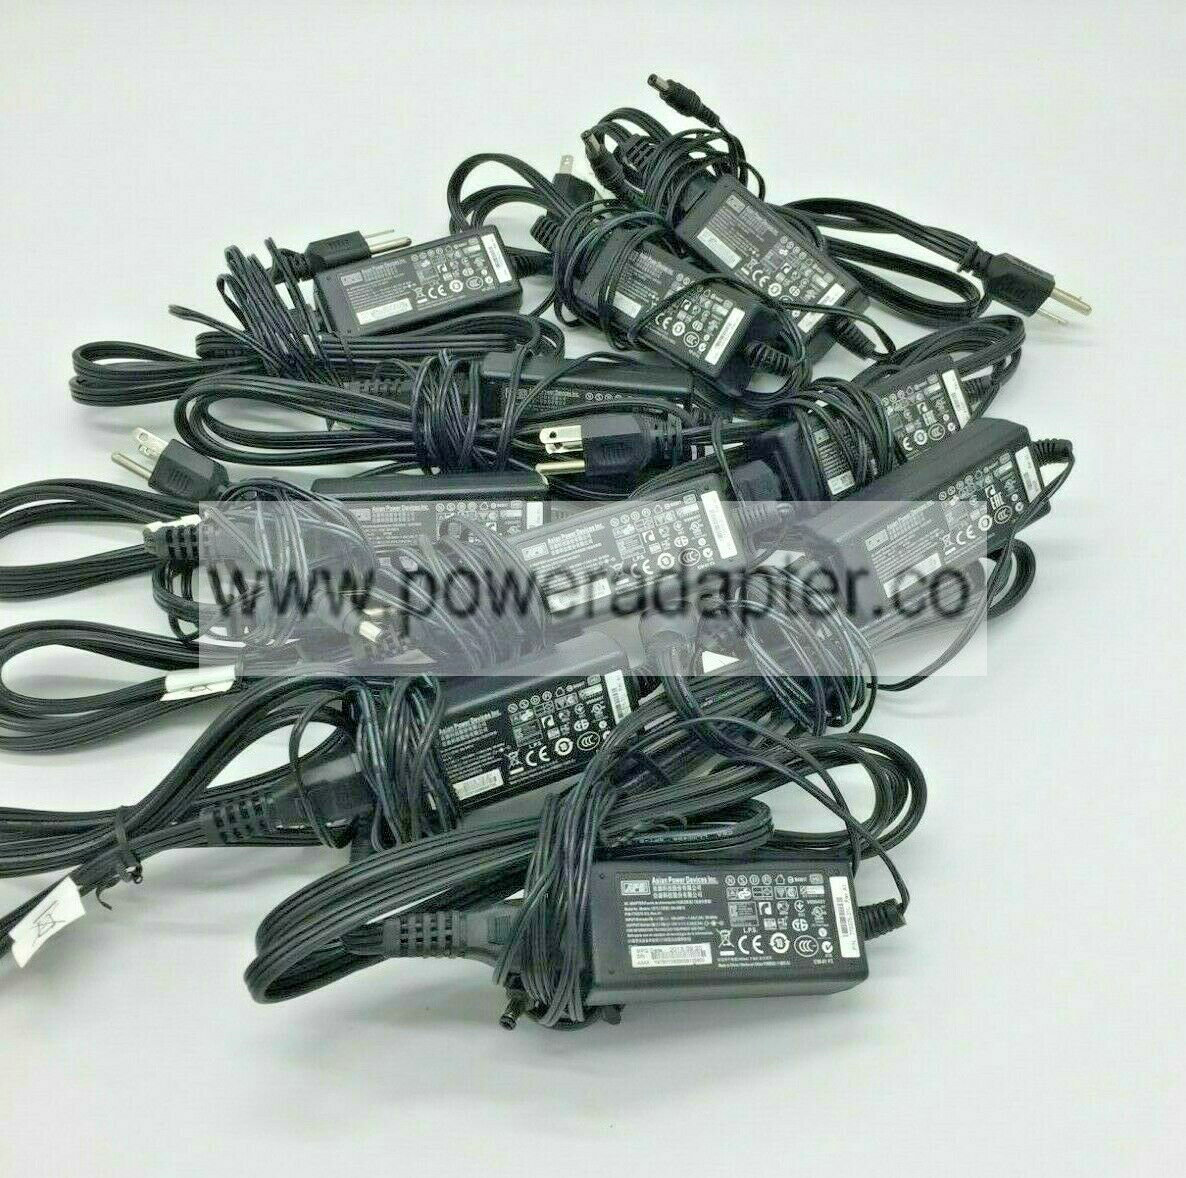 lot of 10 WYSE APD AC Adapter DA-30E12 770375-31L 12V 2.5A 9y62f charger power lot of 10 WYSE APD AC Adapter DA-